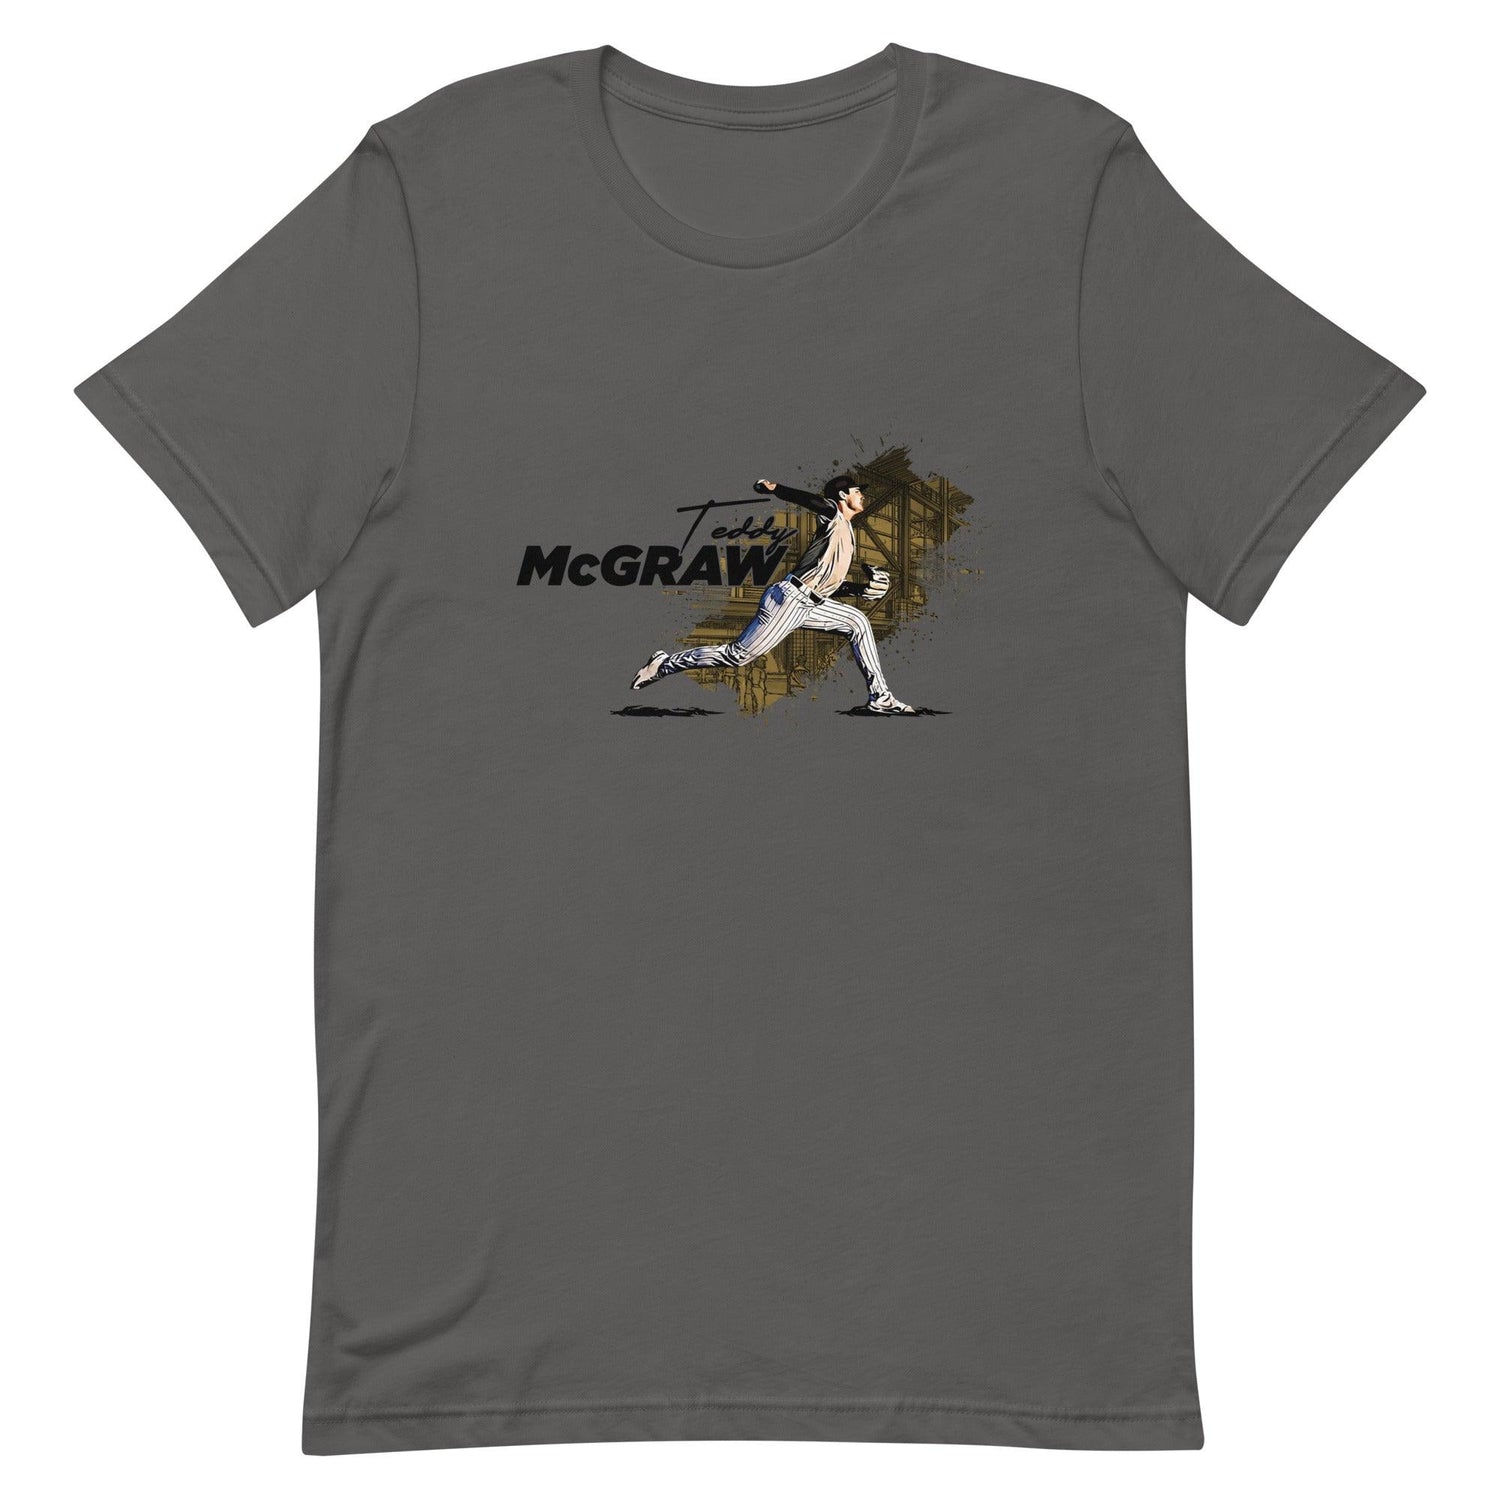 Teddy McGraw “Essential” t-shirt - Fan Arch